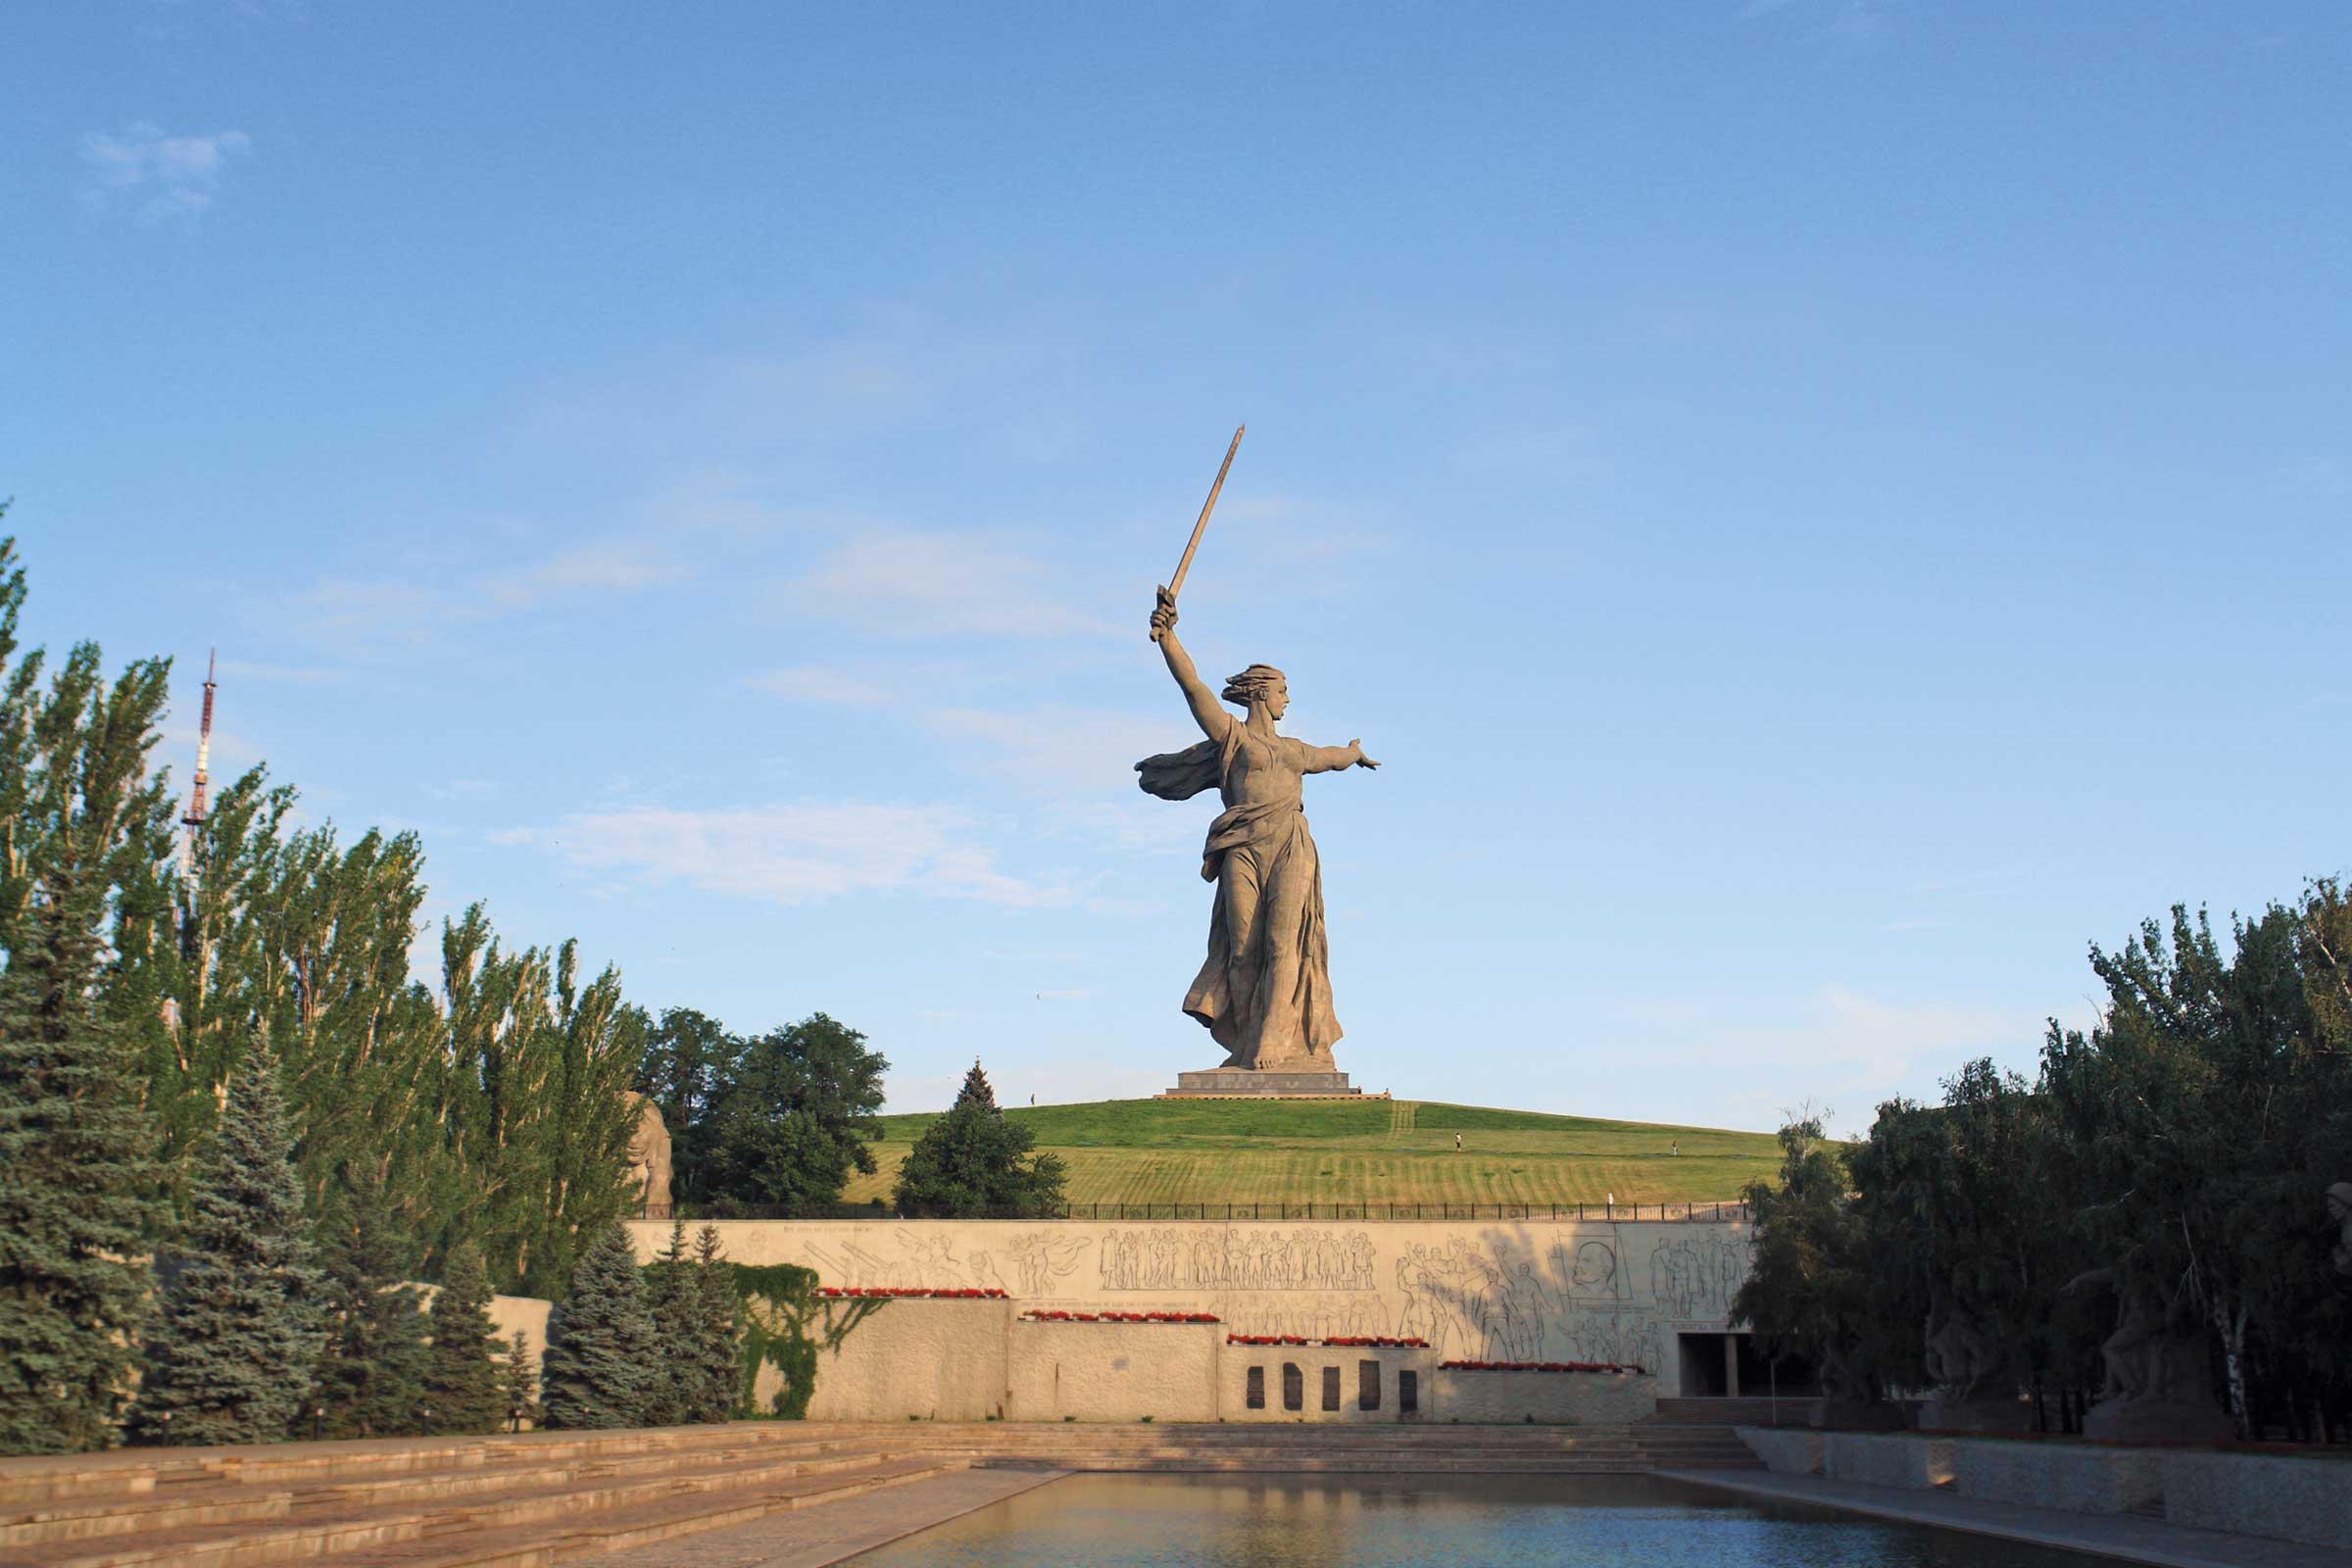 Second World War Memorial in Volgograd